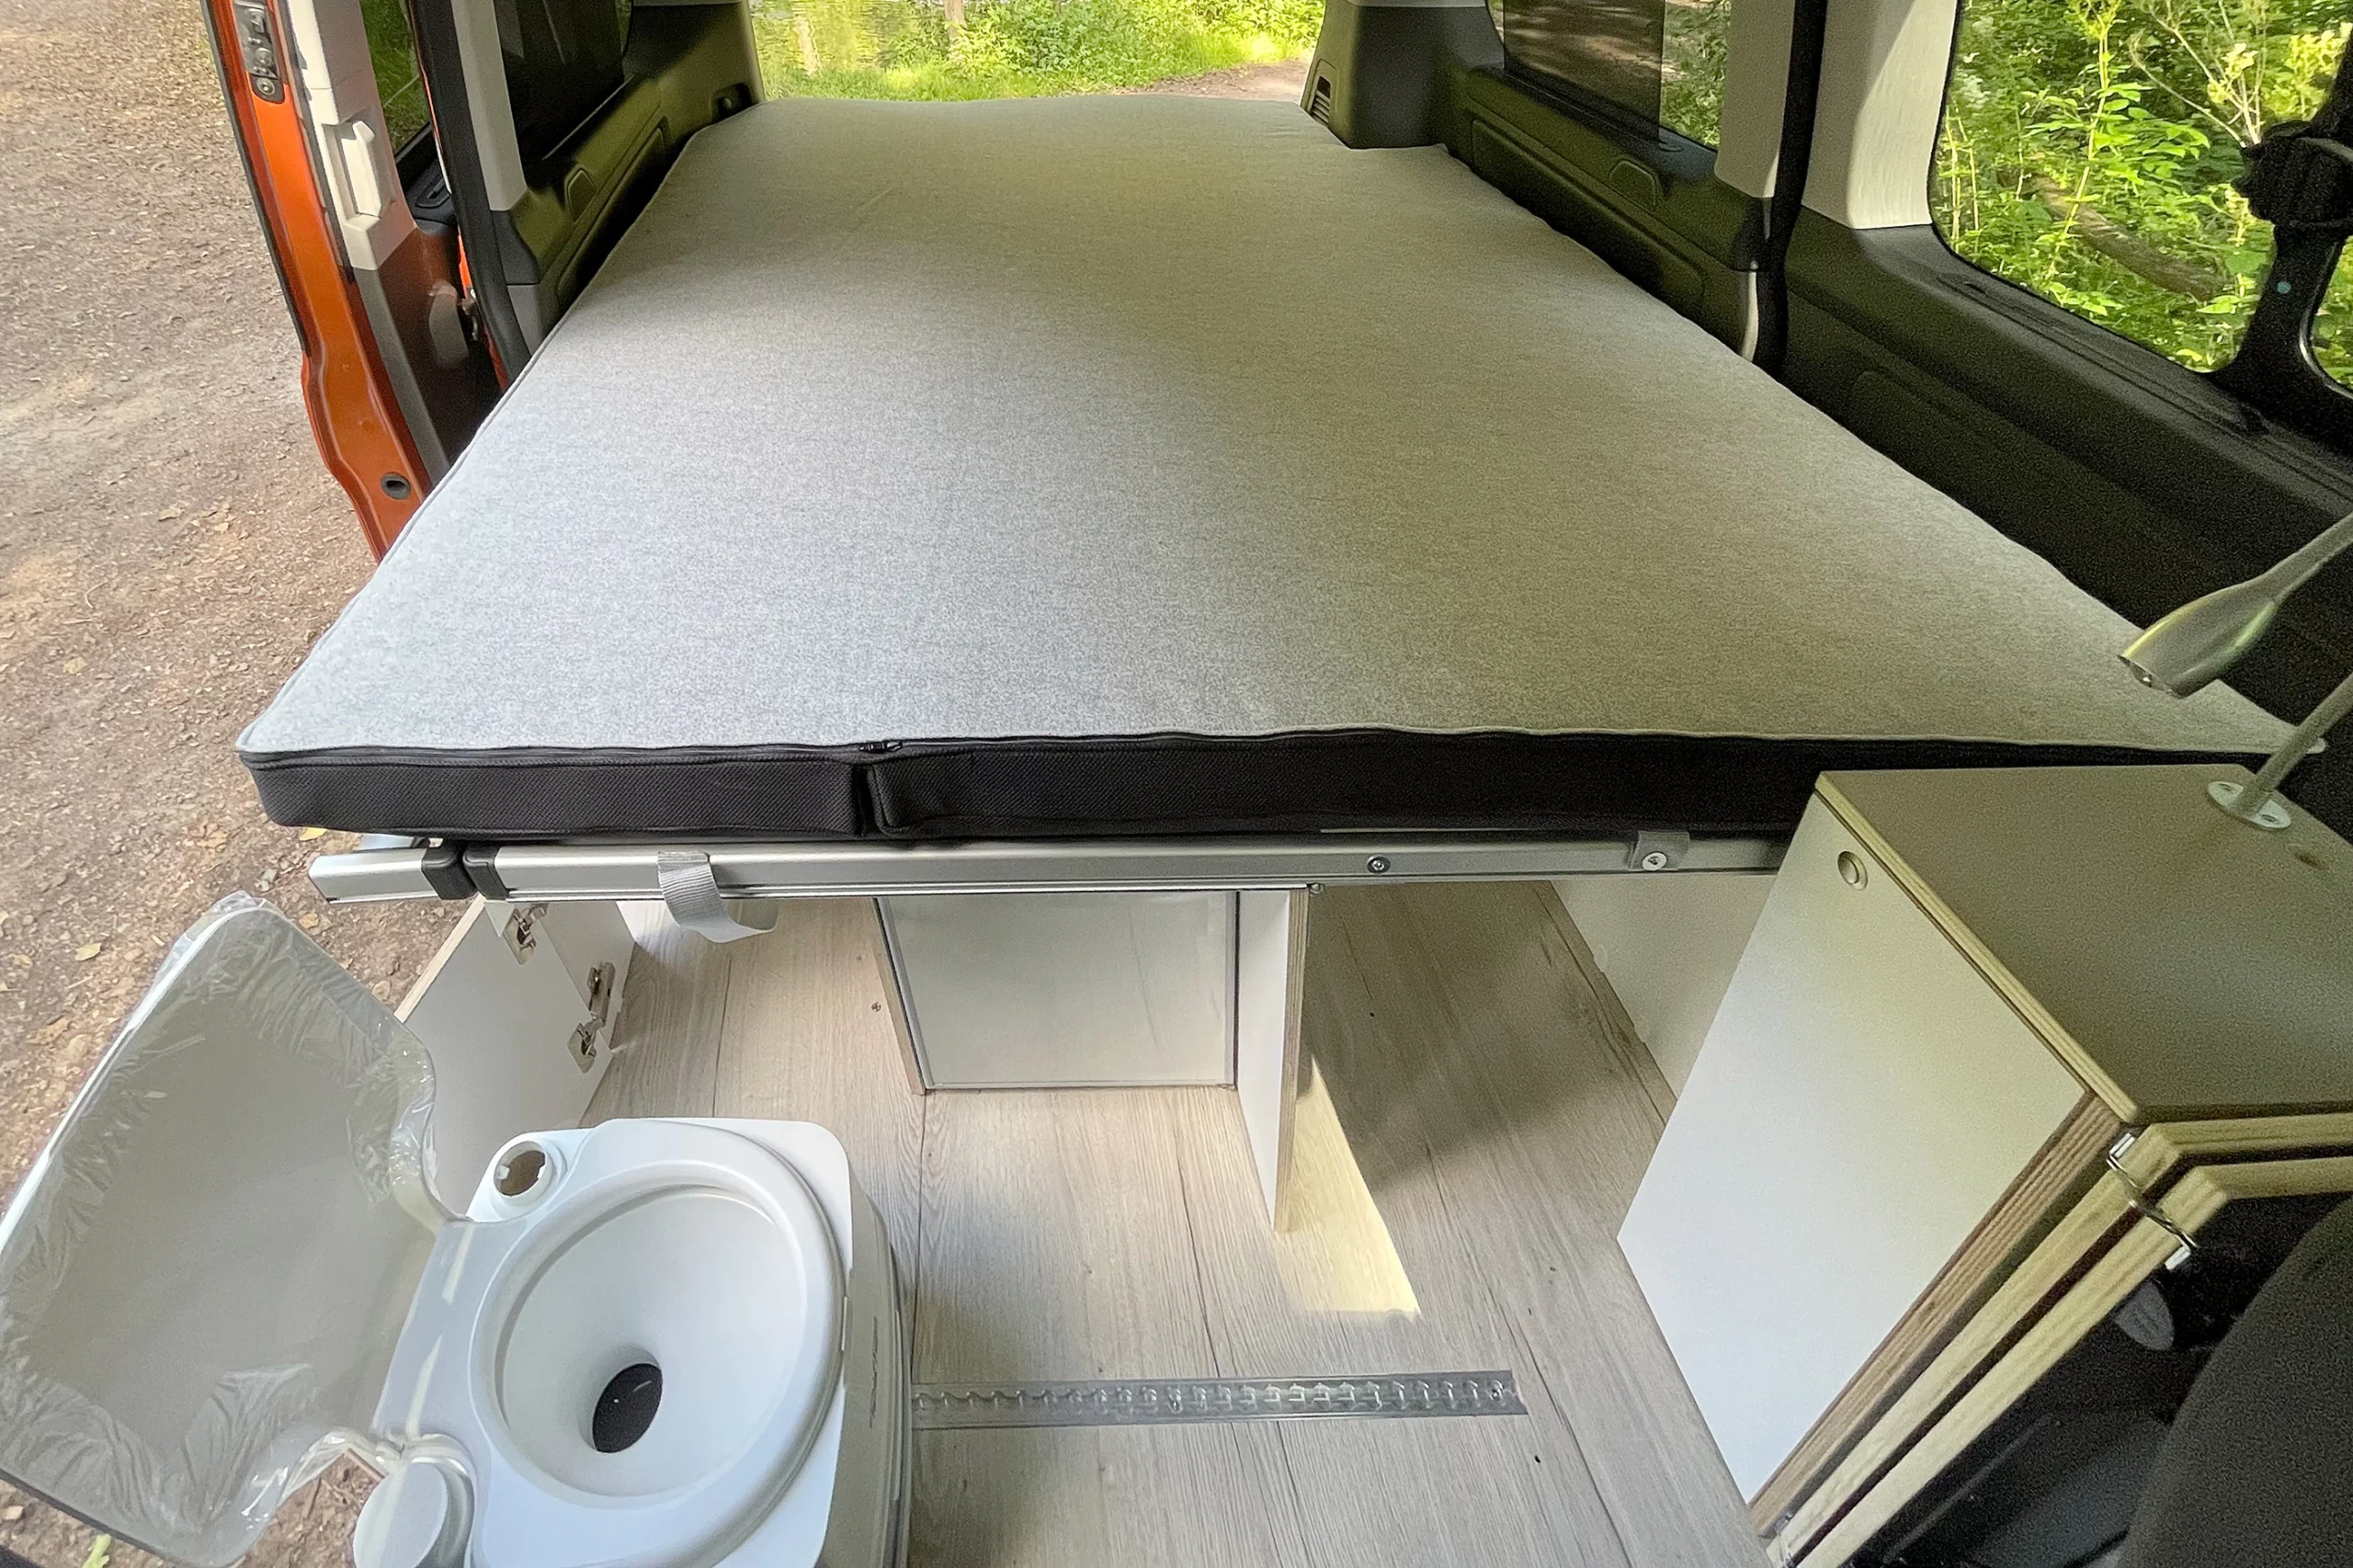 Ford Transit camper bed